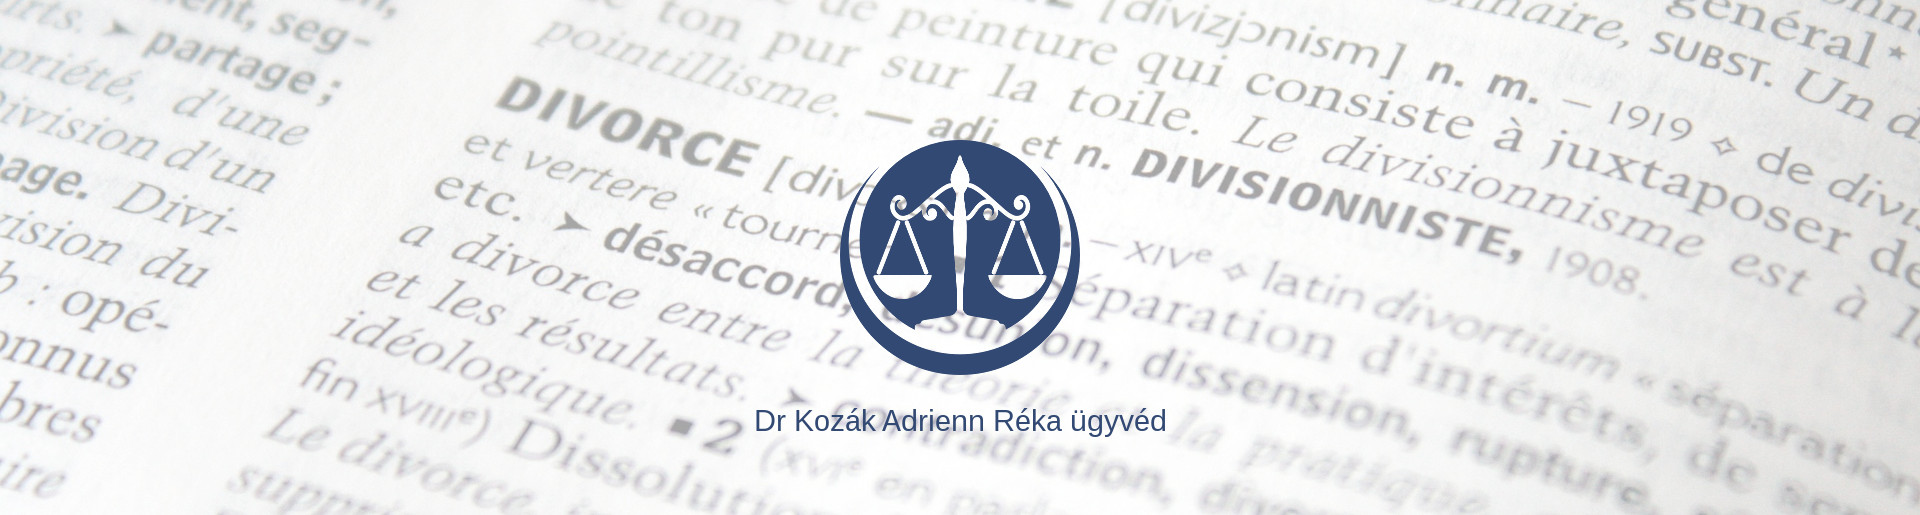 Dr Kozák Adrienn Réka ügyvéd békés megye északi kapujában